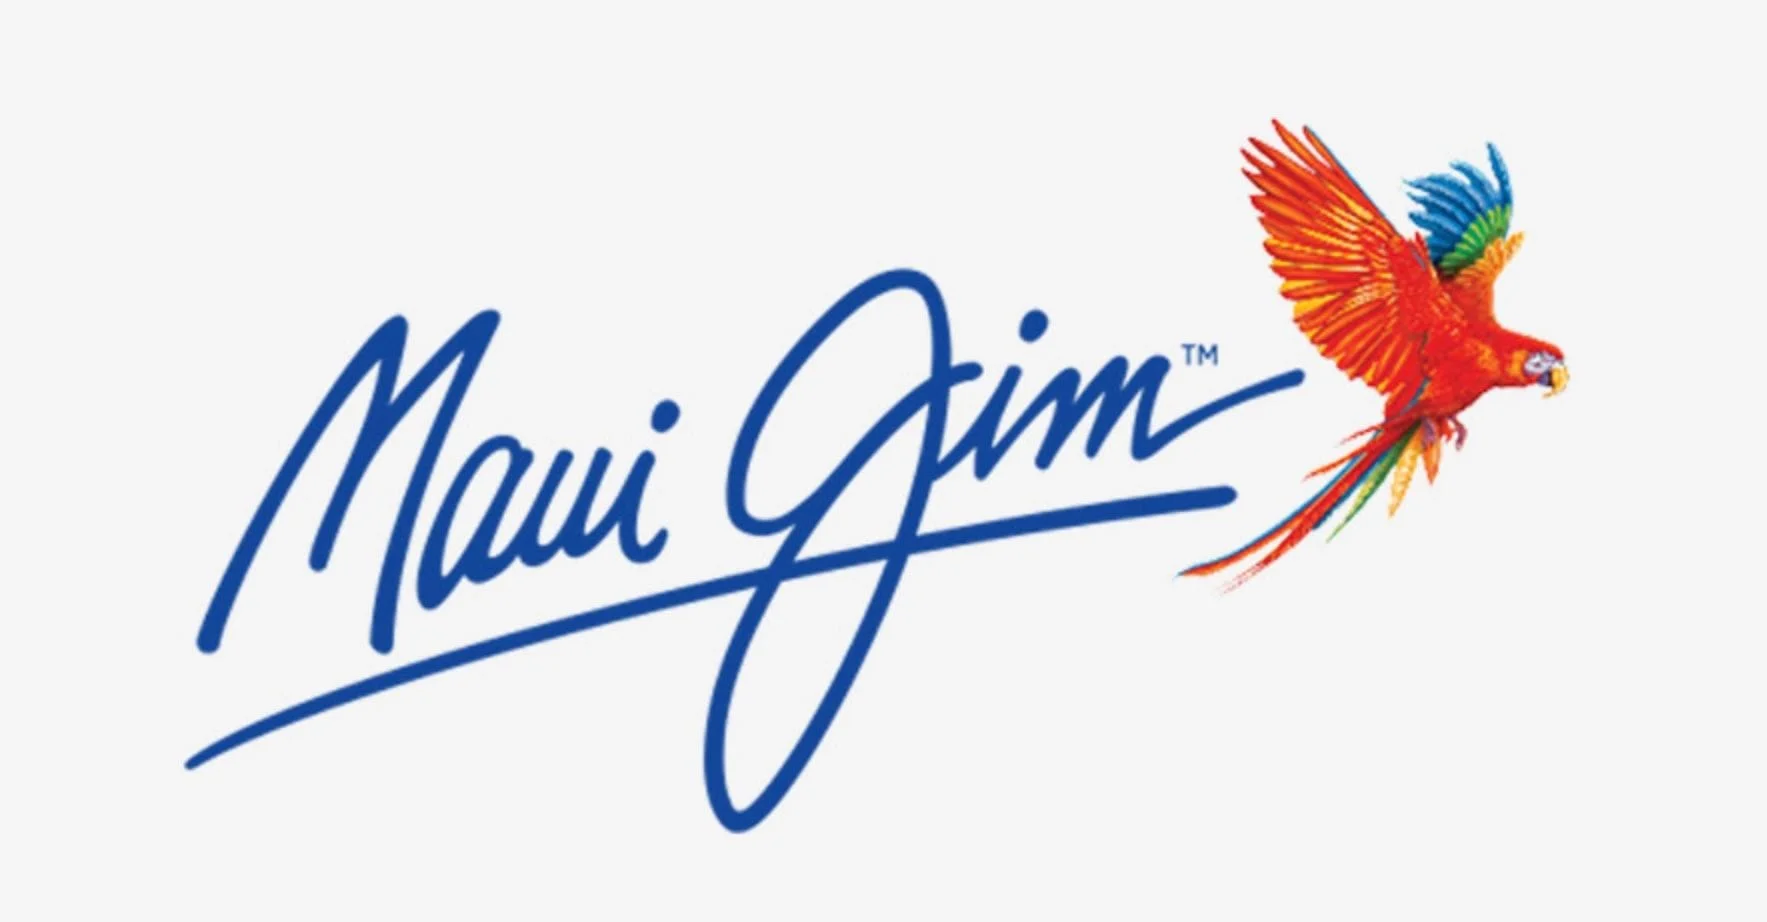 Maui Jim Logo